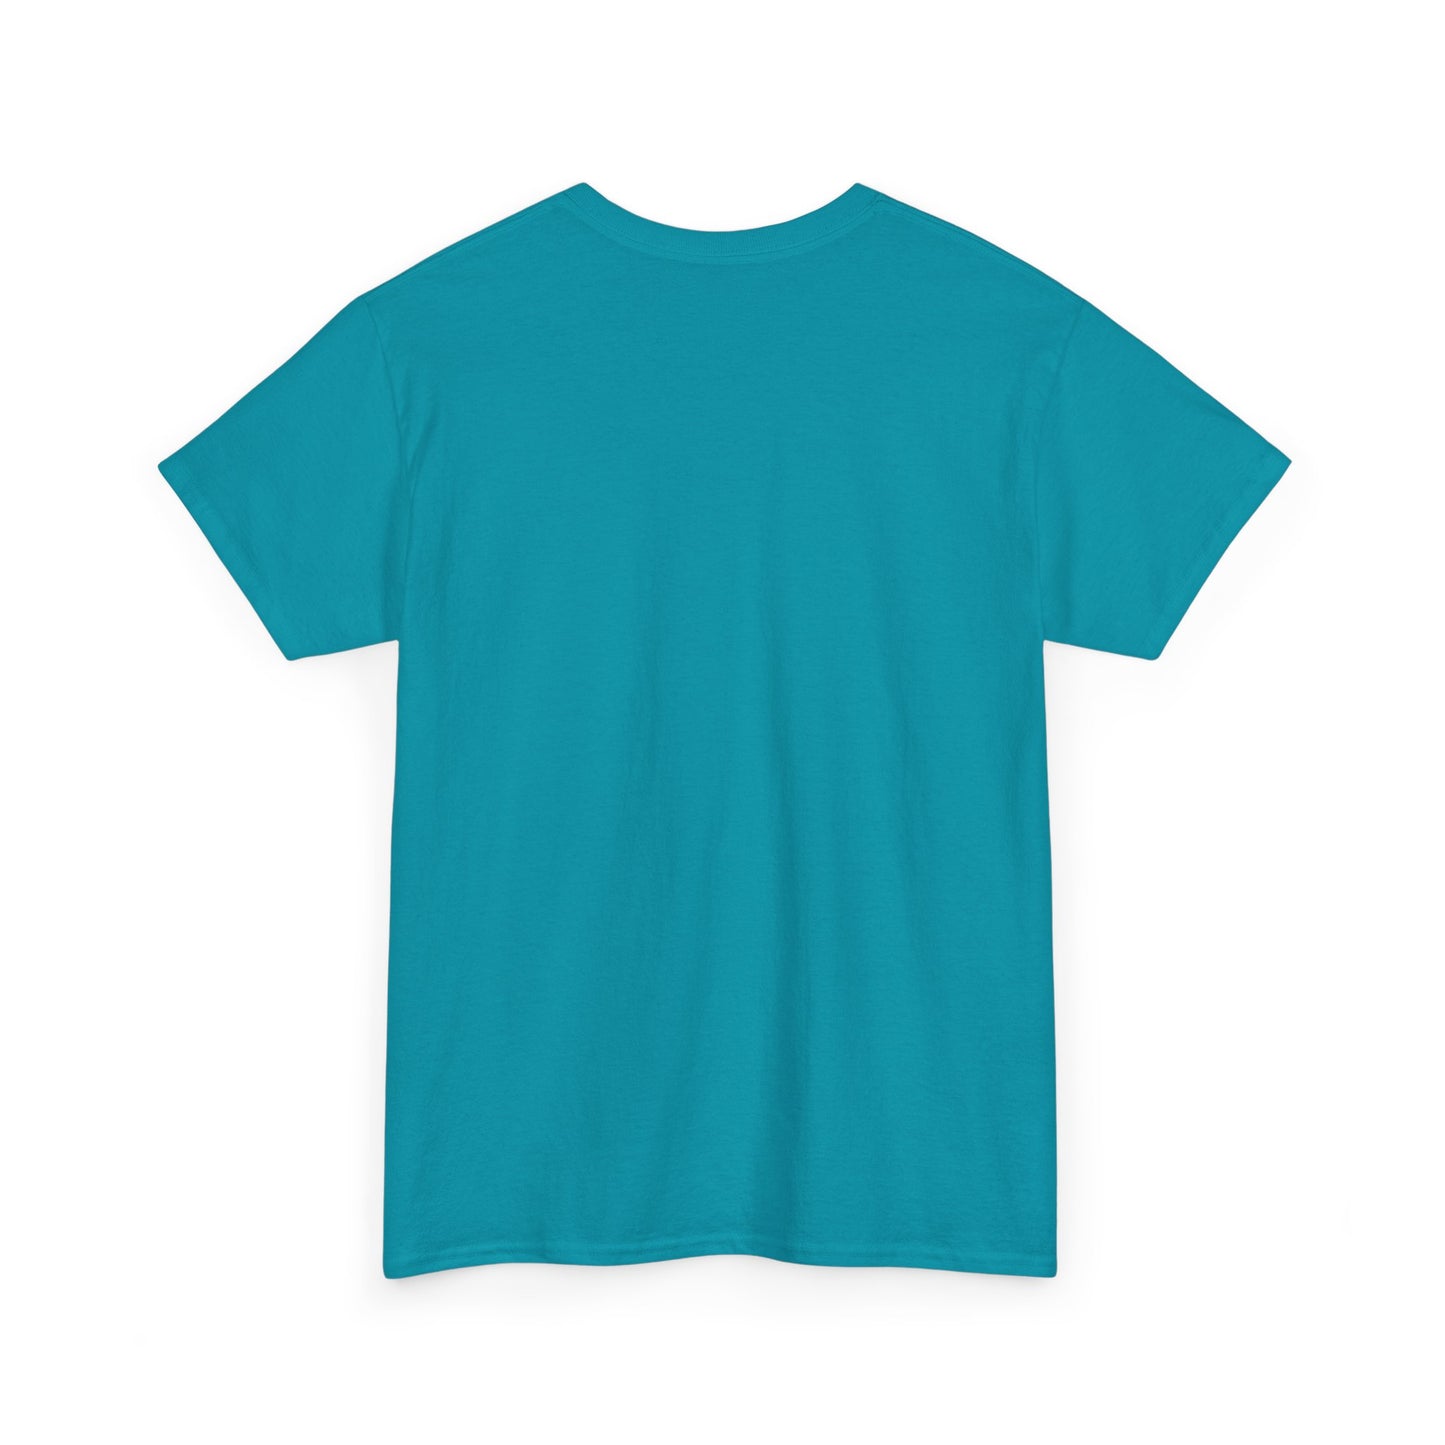 Y.M.L.Y. "OG Kush" T-Shirt Cannabis T-Shirts Urban Wear Street Wear Classic Cotton Tee